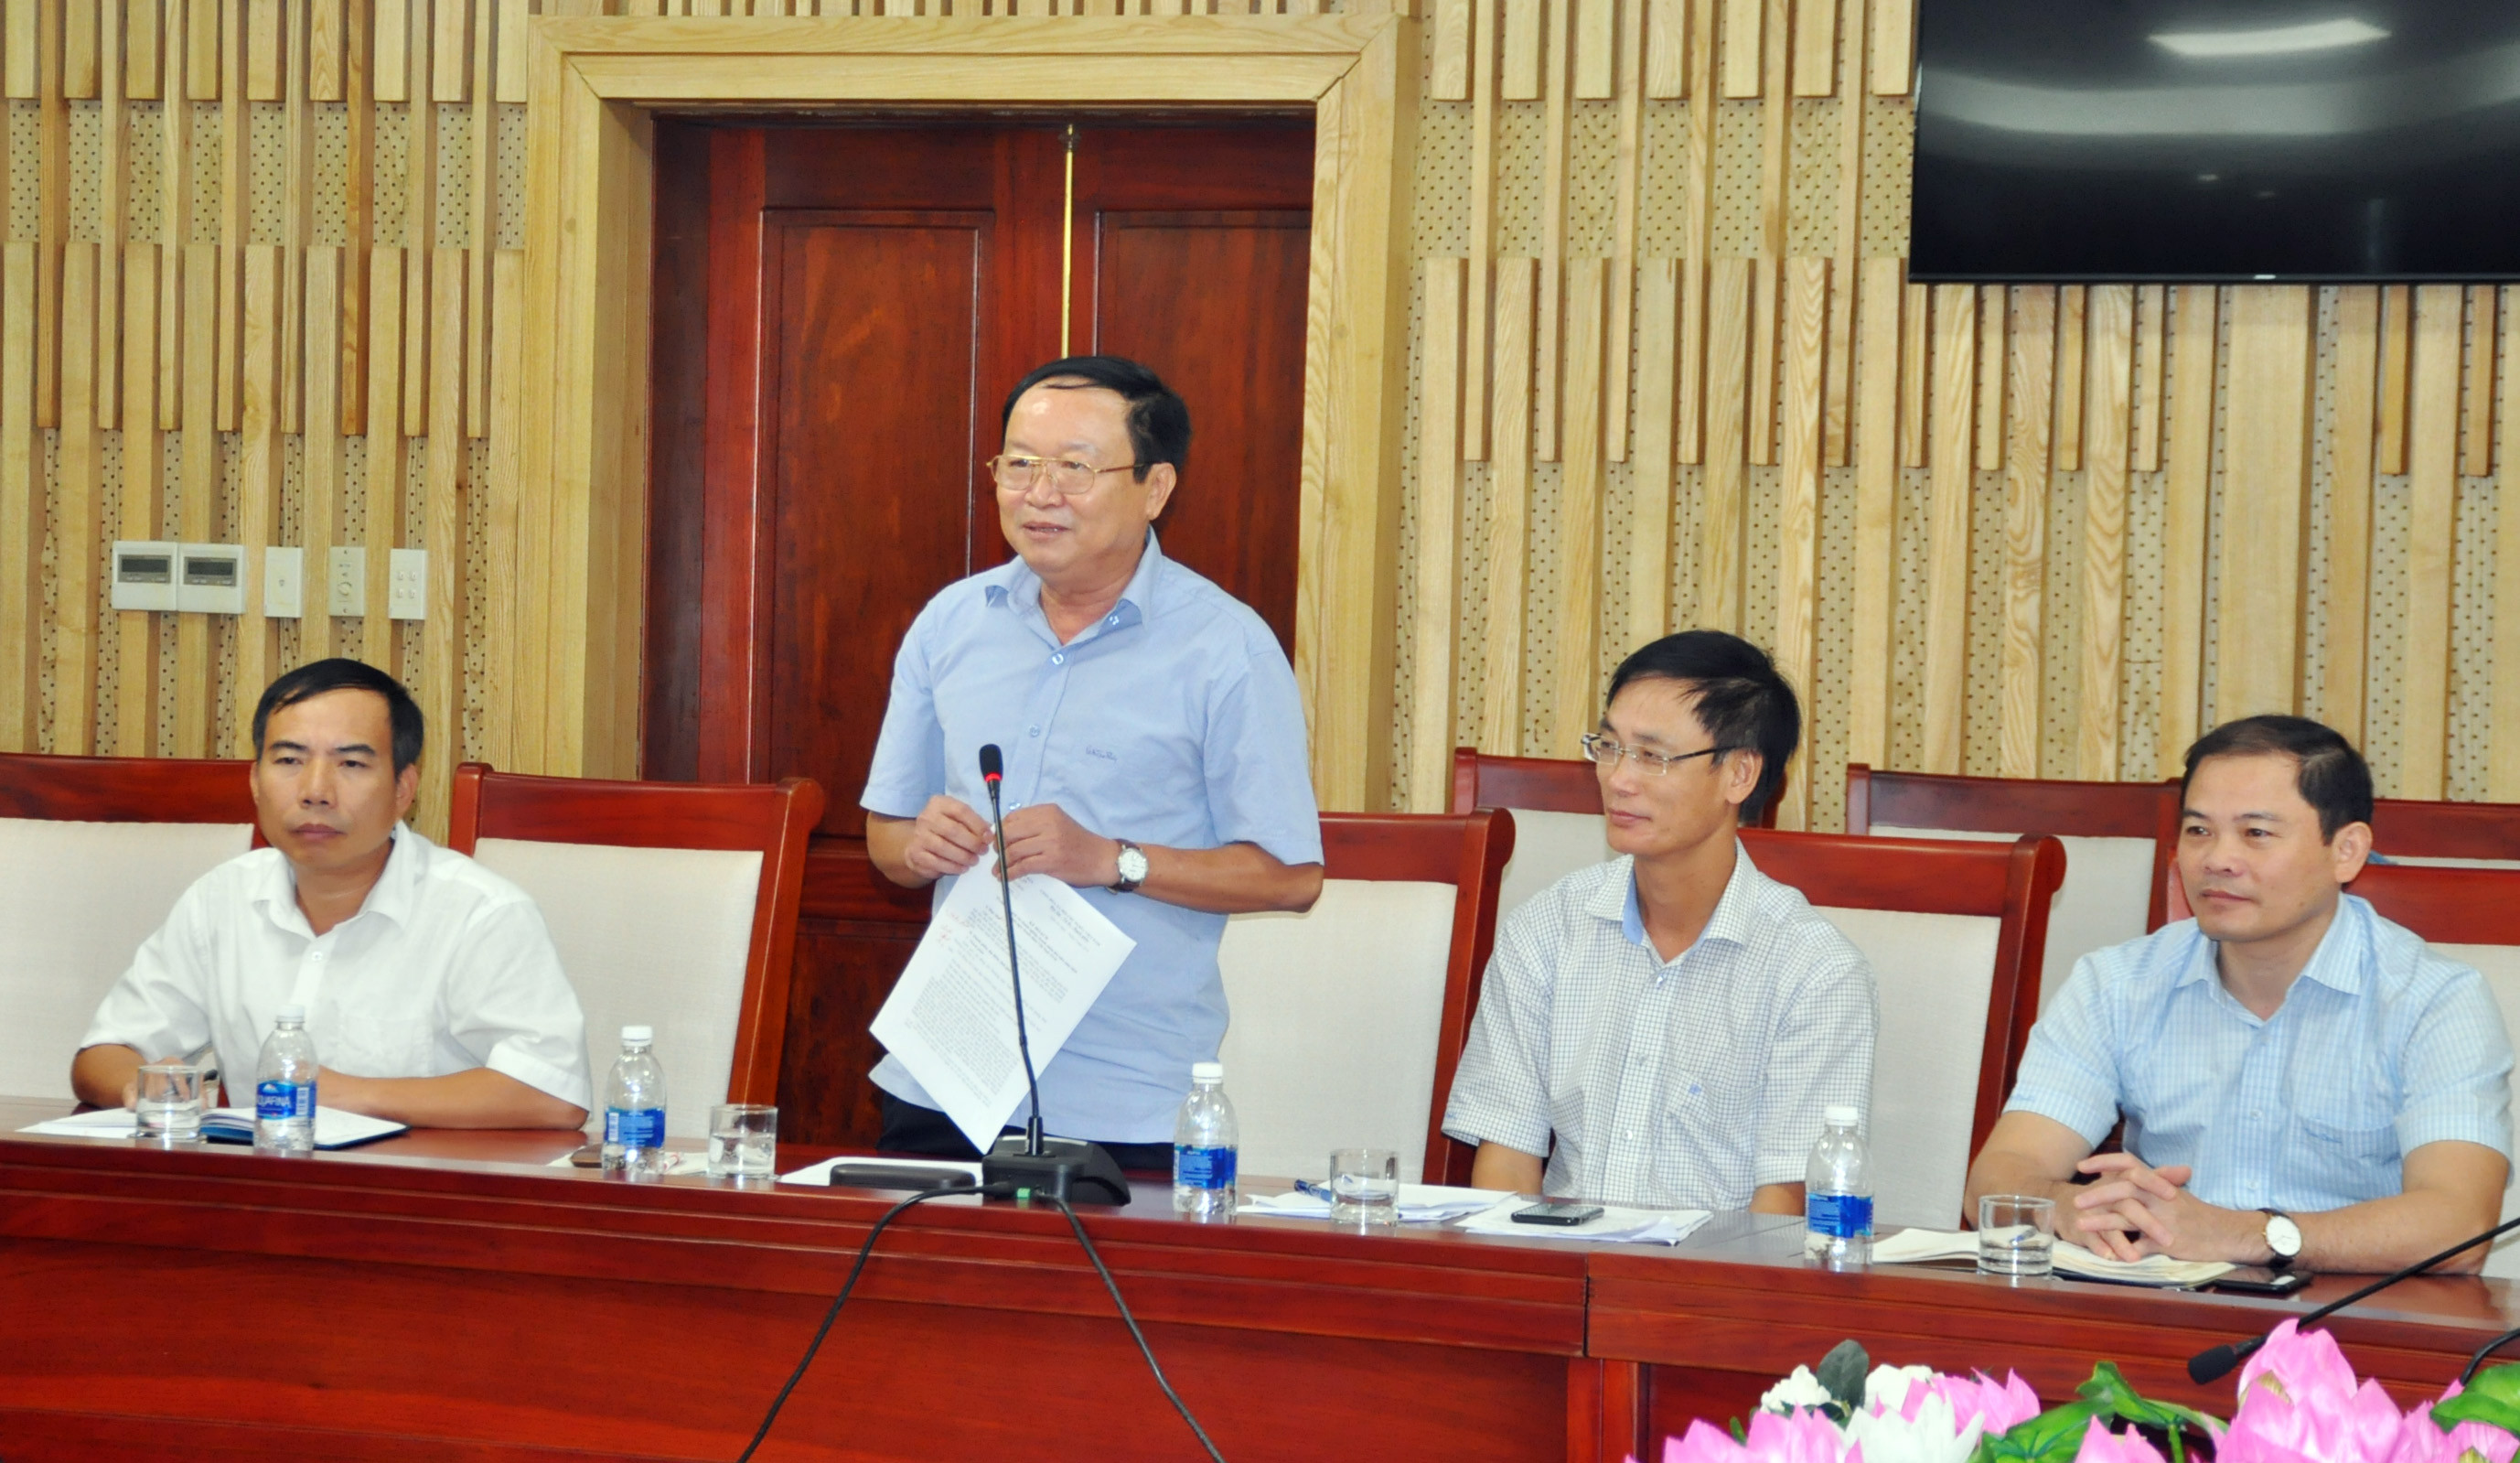 Đồng chí Thái Khắc Thư – Bí thư Đảng ủy khối DNNN phát biểu cho ý kiến về kế hoạch tổ chức ngày doanh nhân. Ảnh Việt Phương